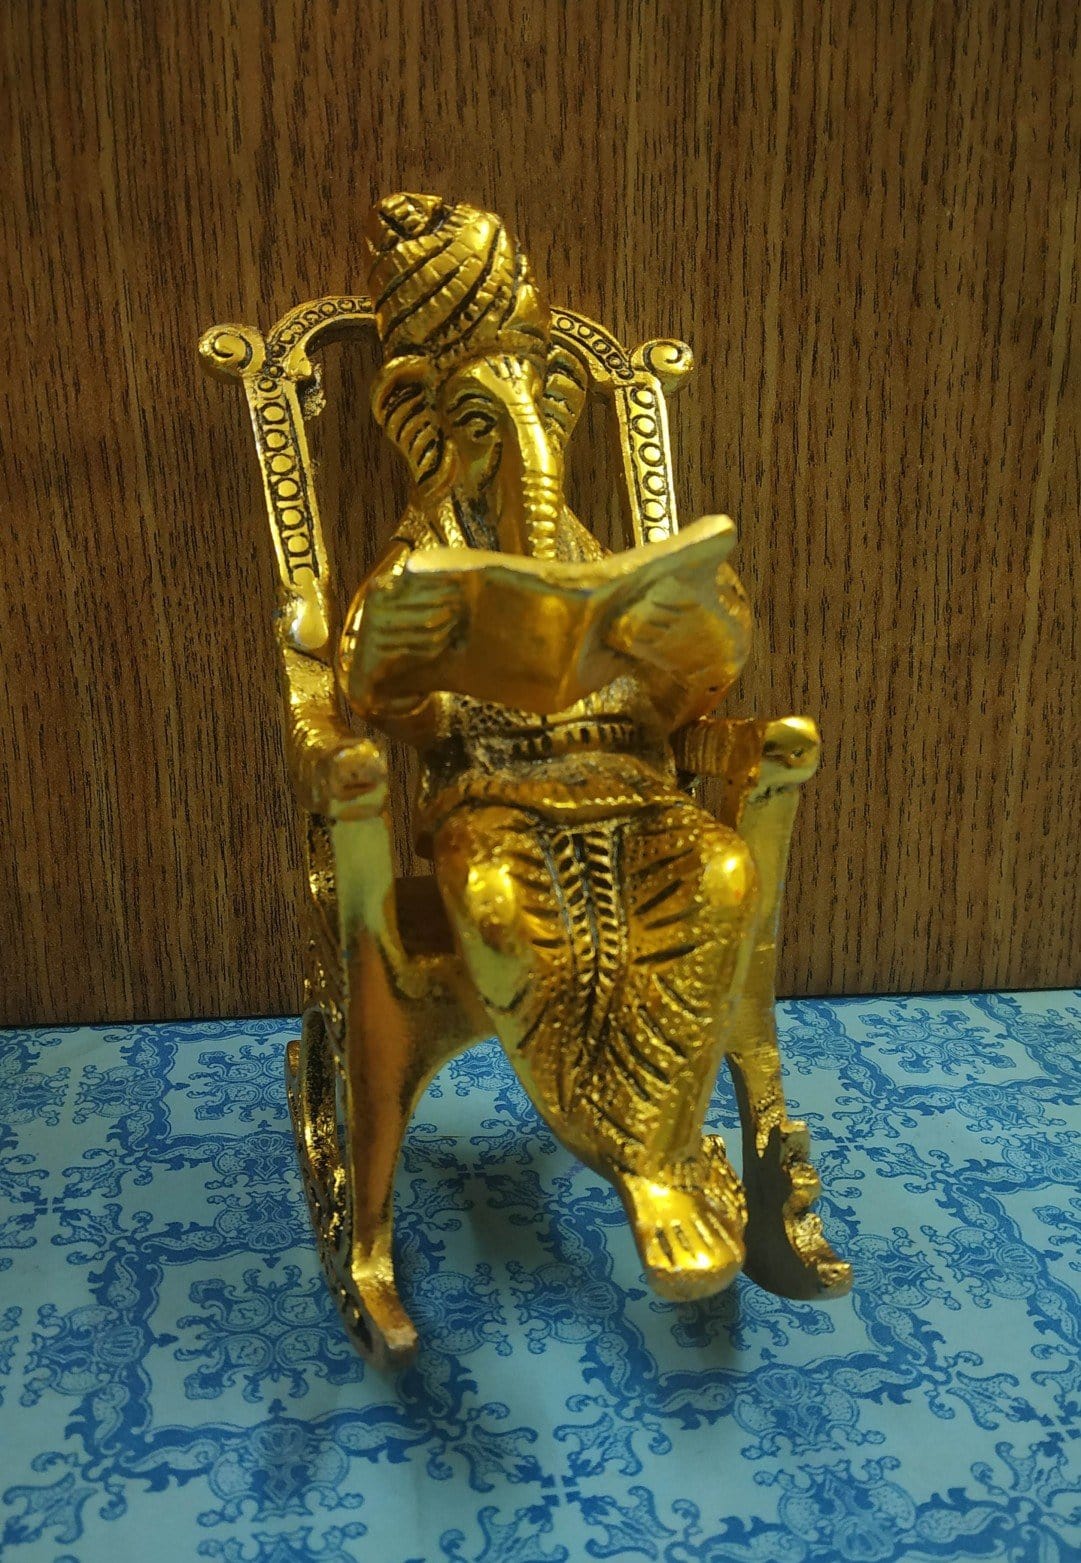 New Jaipur Handicraft Brass Showpiece Gold / Standard / Lord Ganesha New Jaipur Handicraft Ganeshji Reading BhagwadGita ✨ / Sitting On chair statue☀📿 Gifting Showpiece 🎁